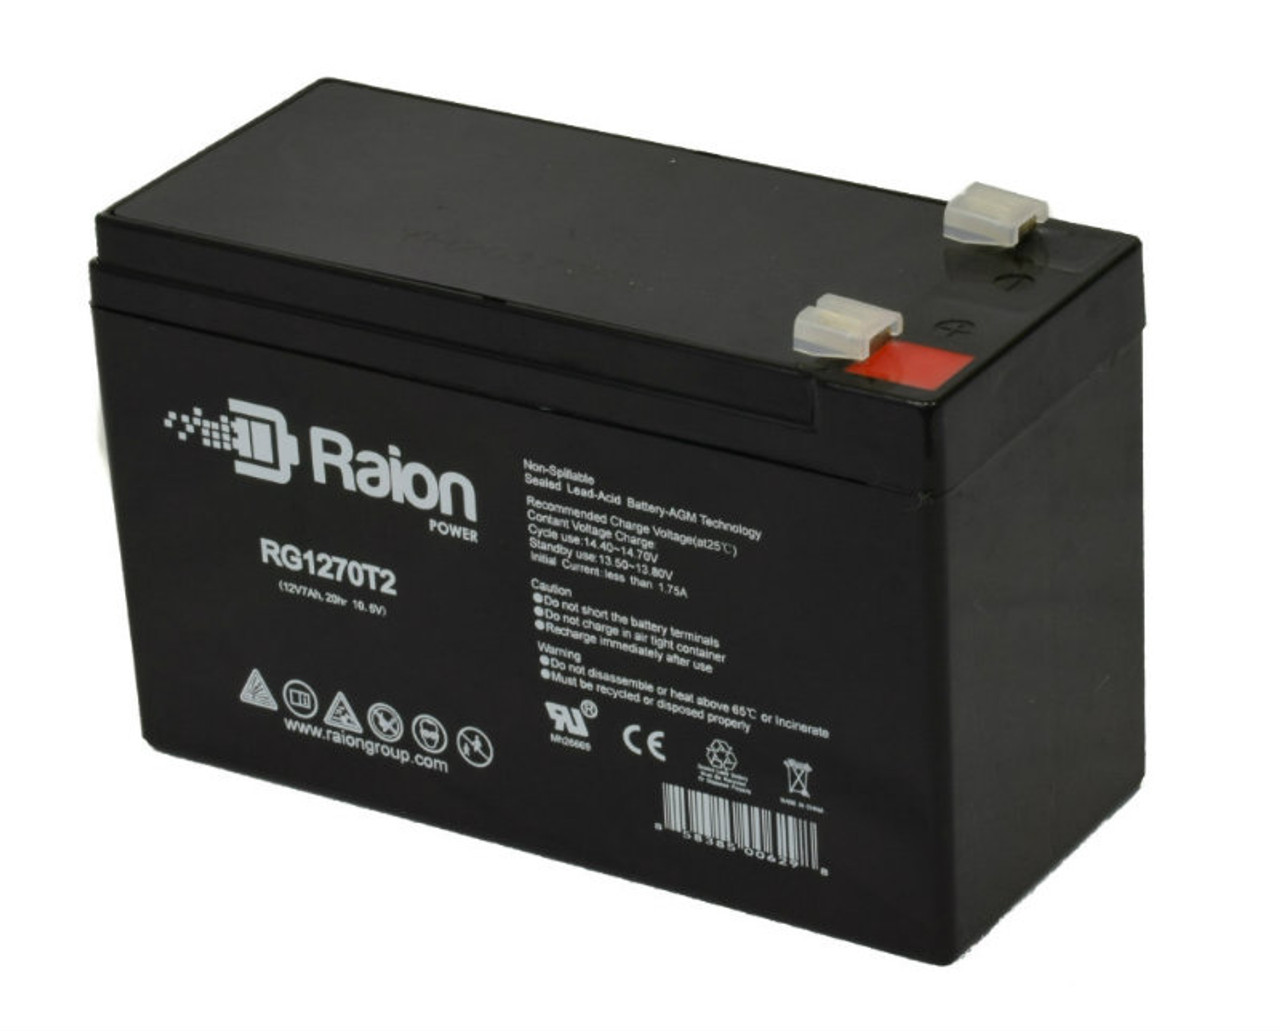 Raion Power Replacement 12V 7Ah Battery for fgFORTE FG1270 - 1 Pack